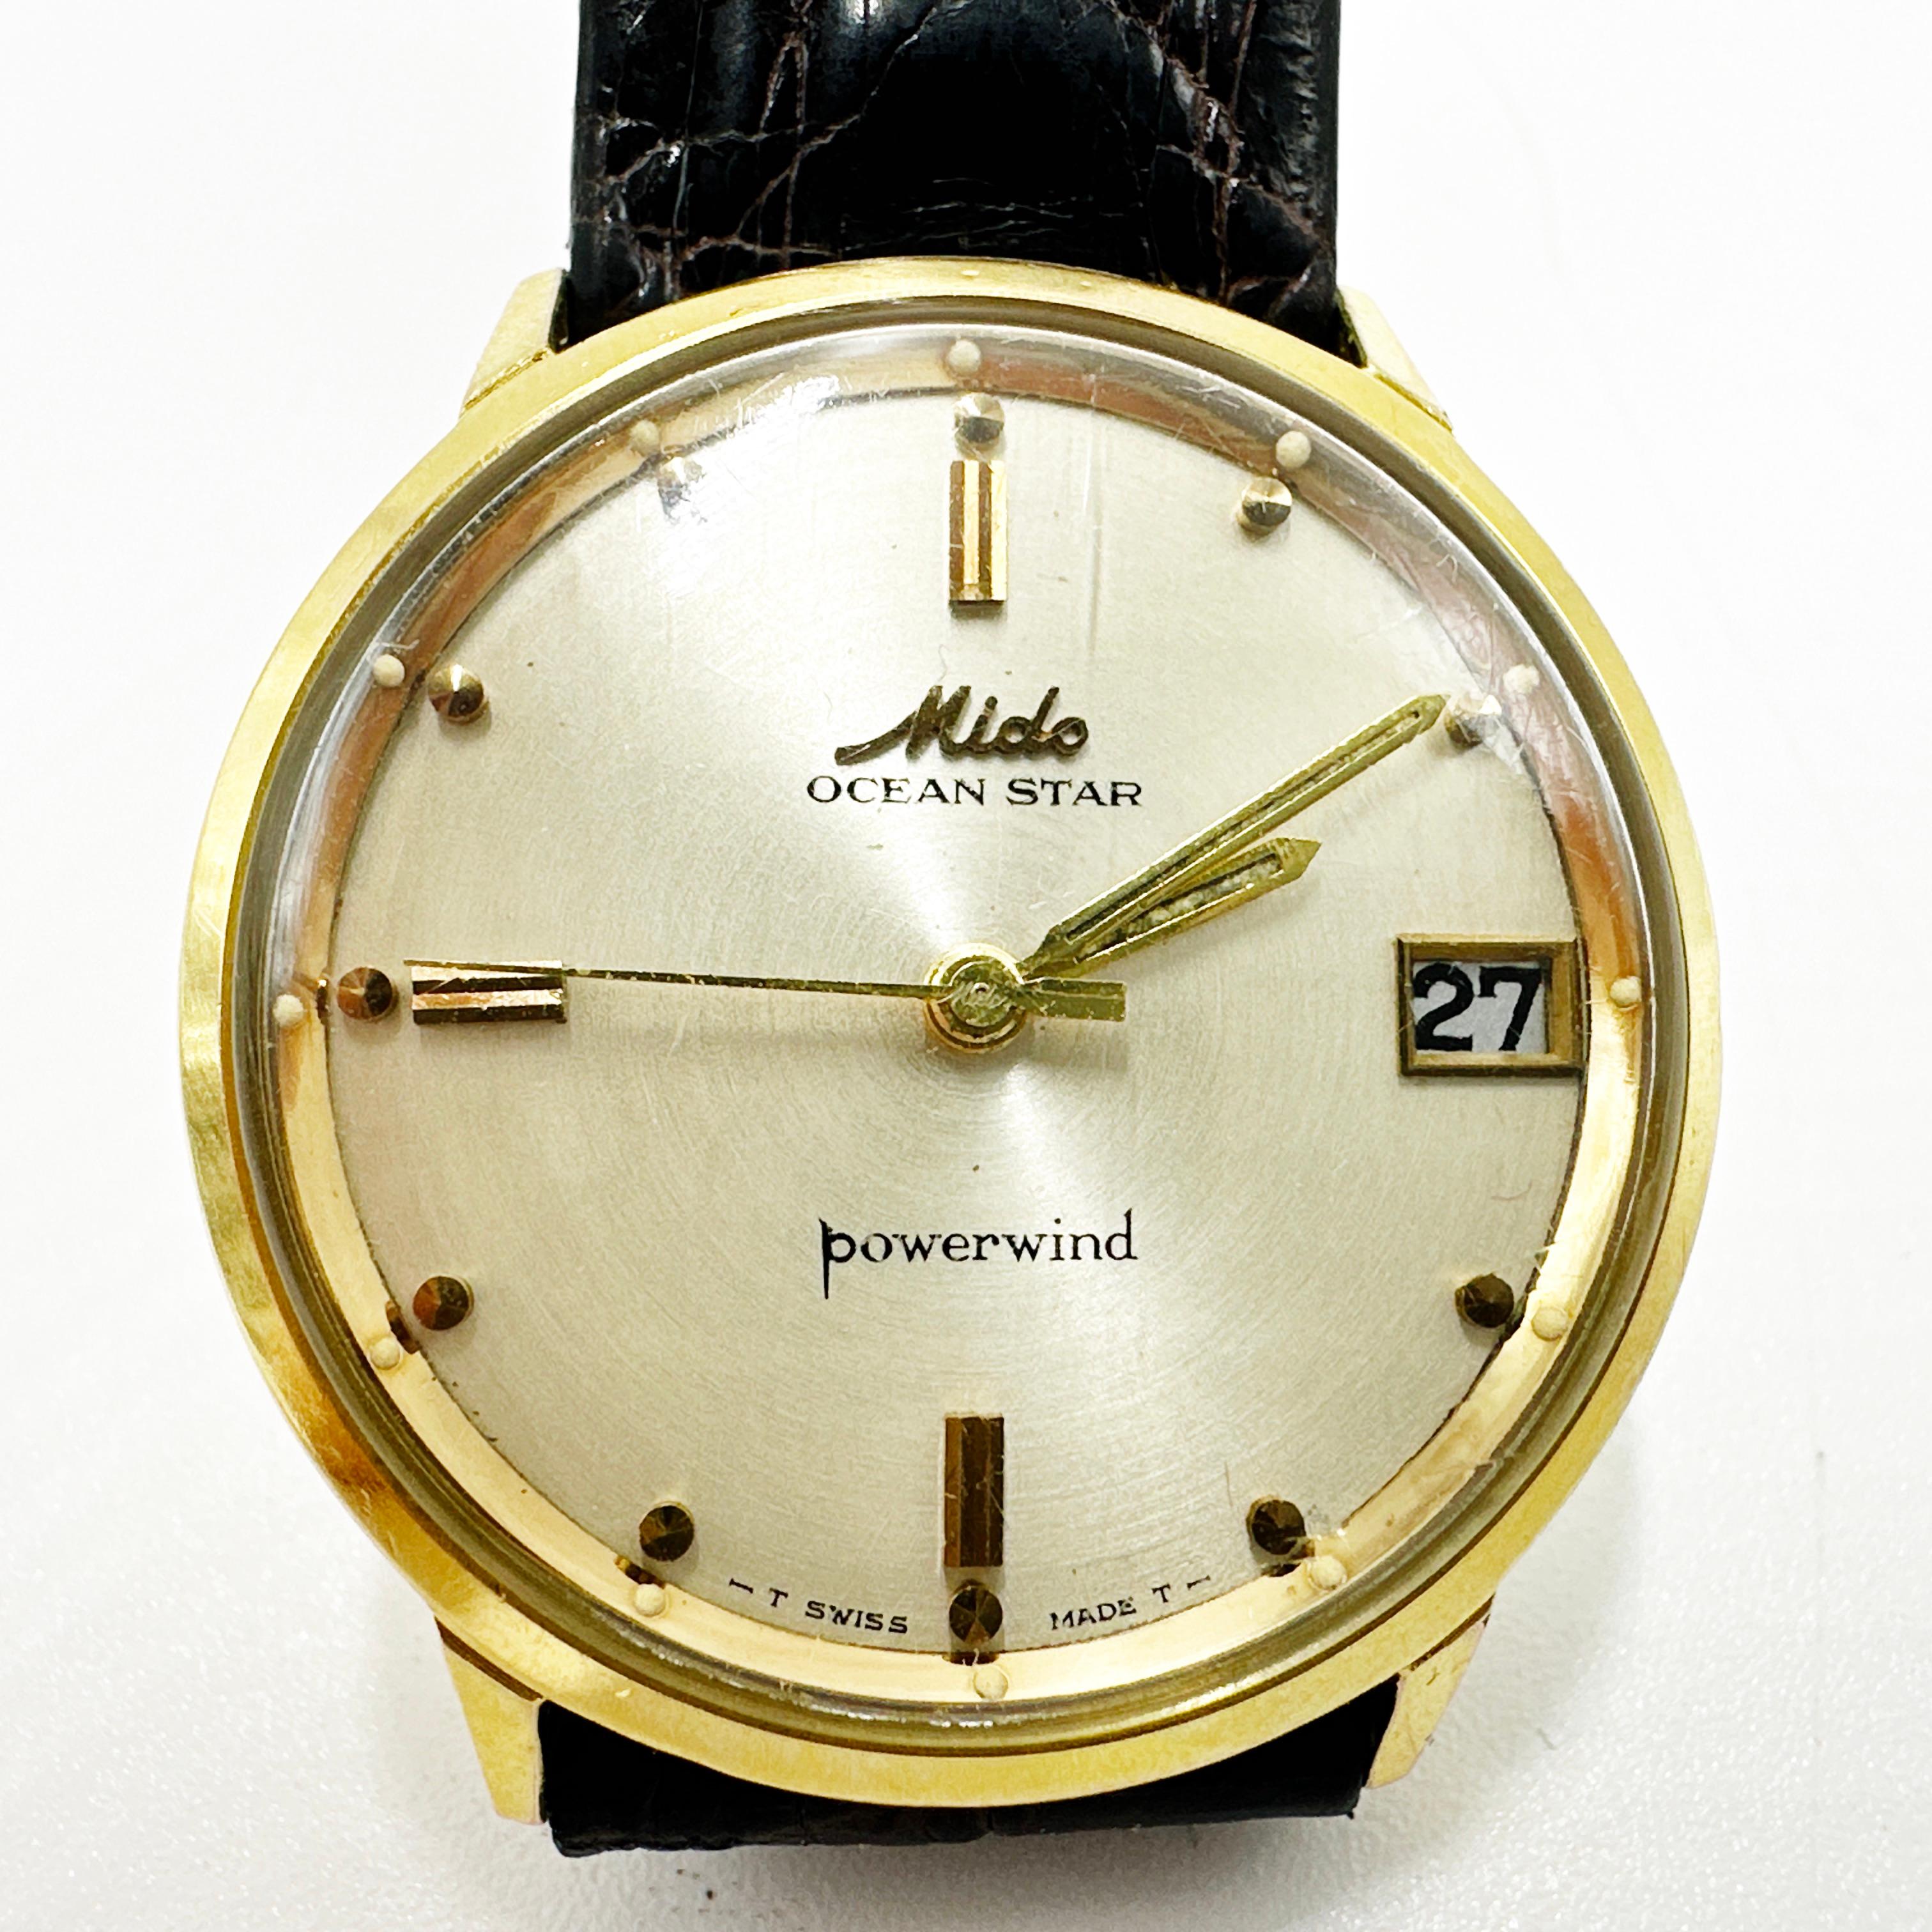 Gentlemen's 1960s MIDO Ocean Star Powerwind Vintage Swiss Automatic Watch. 2